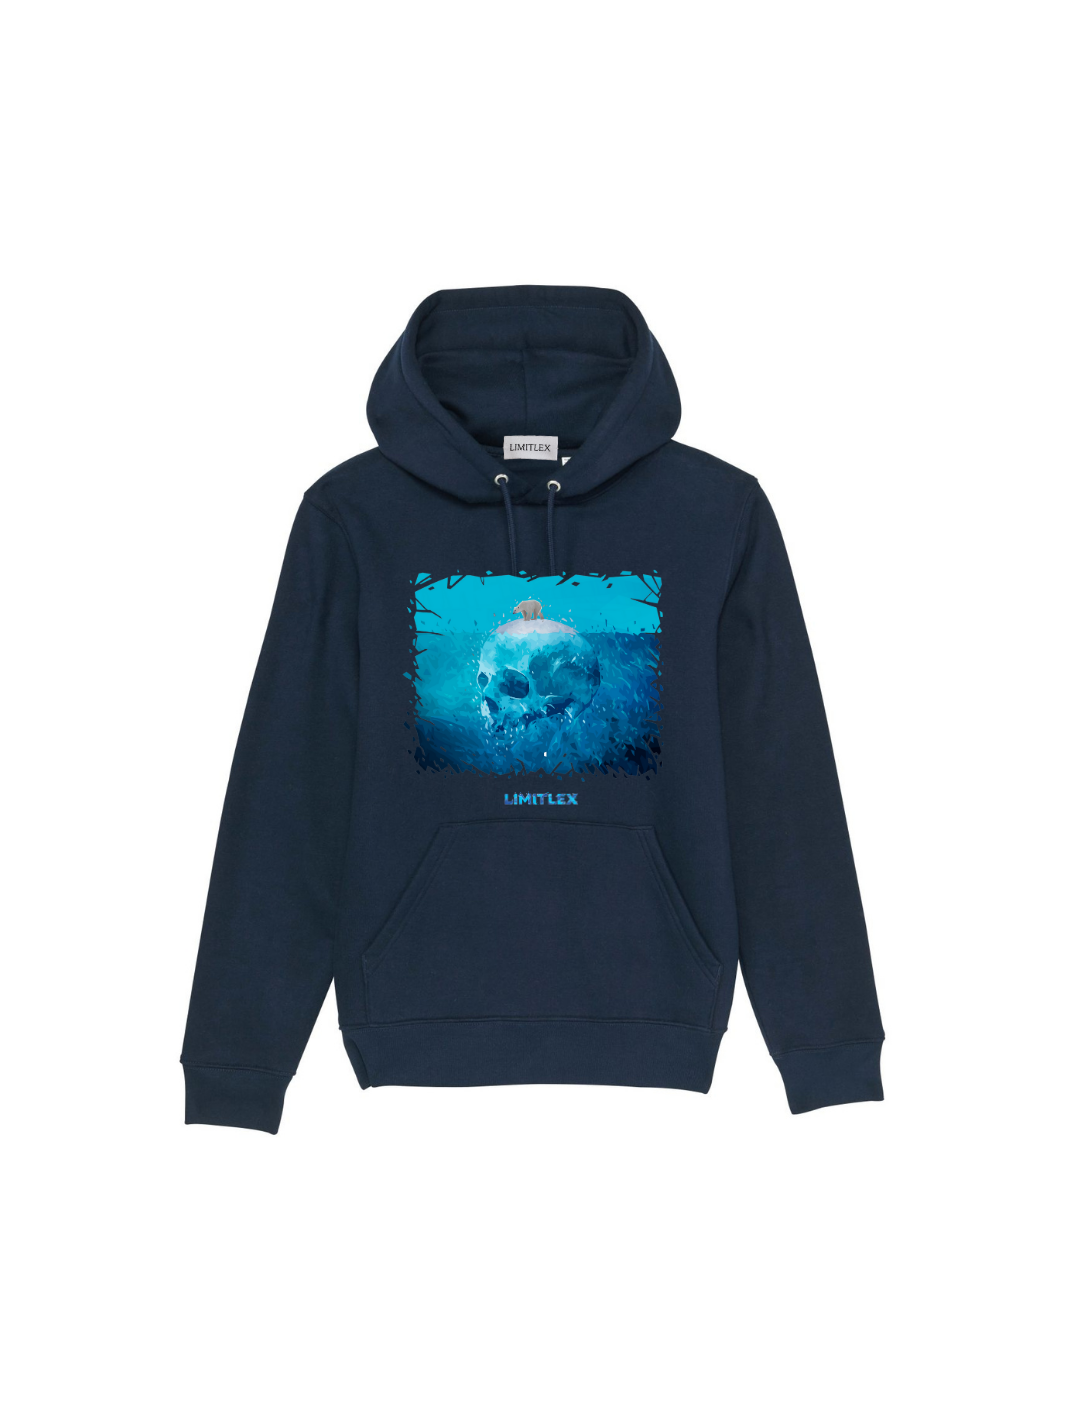 Iceberg hoodie